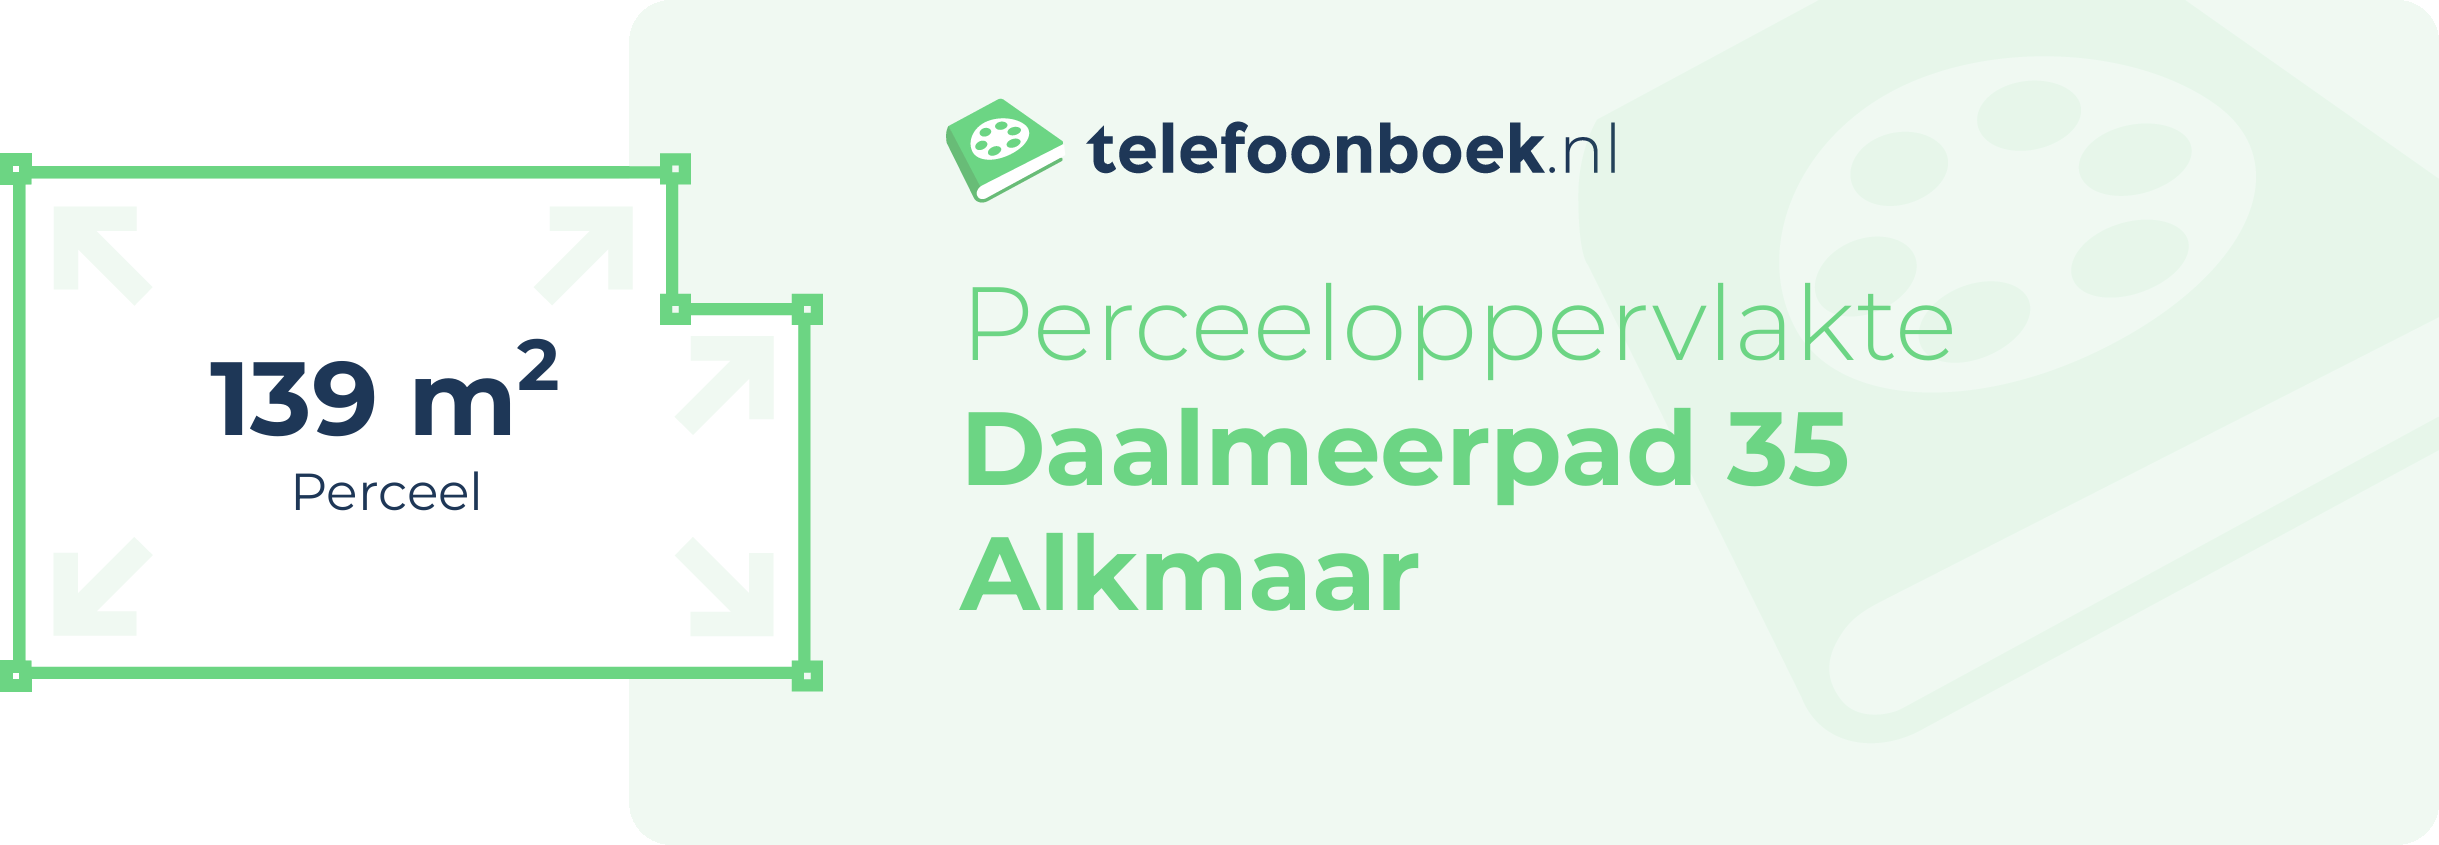 Perceeloppervlakte Daalmeerpad 35 Alkmaar